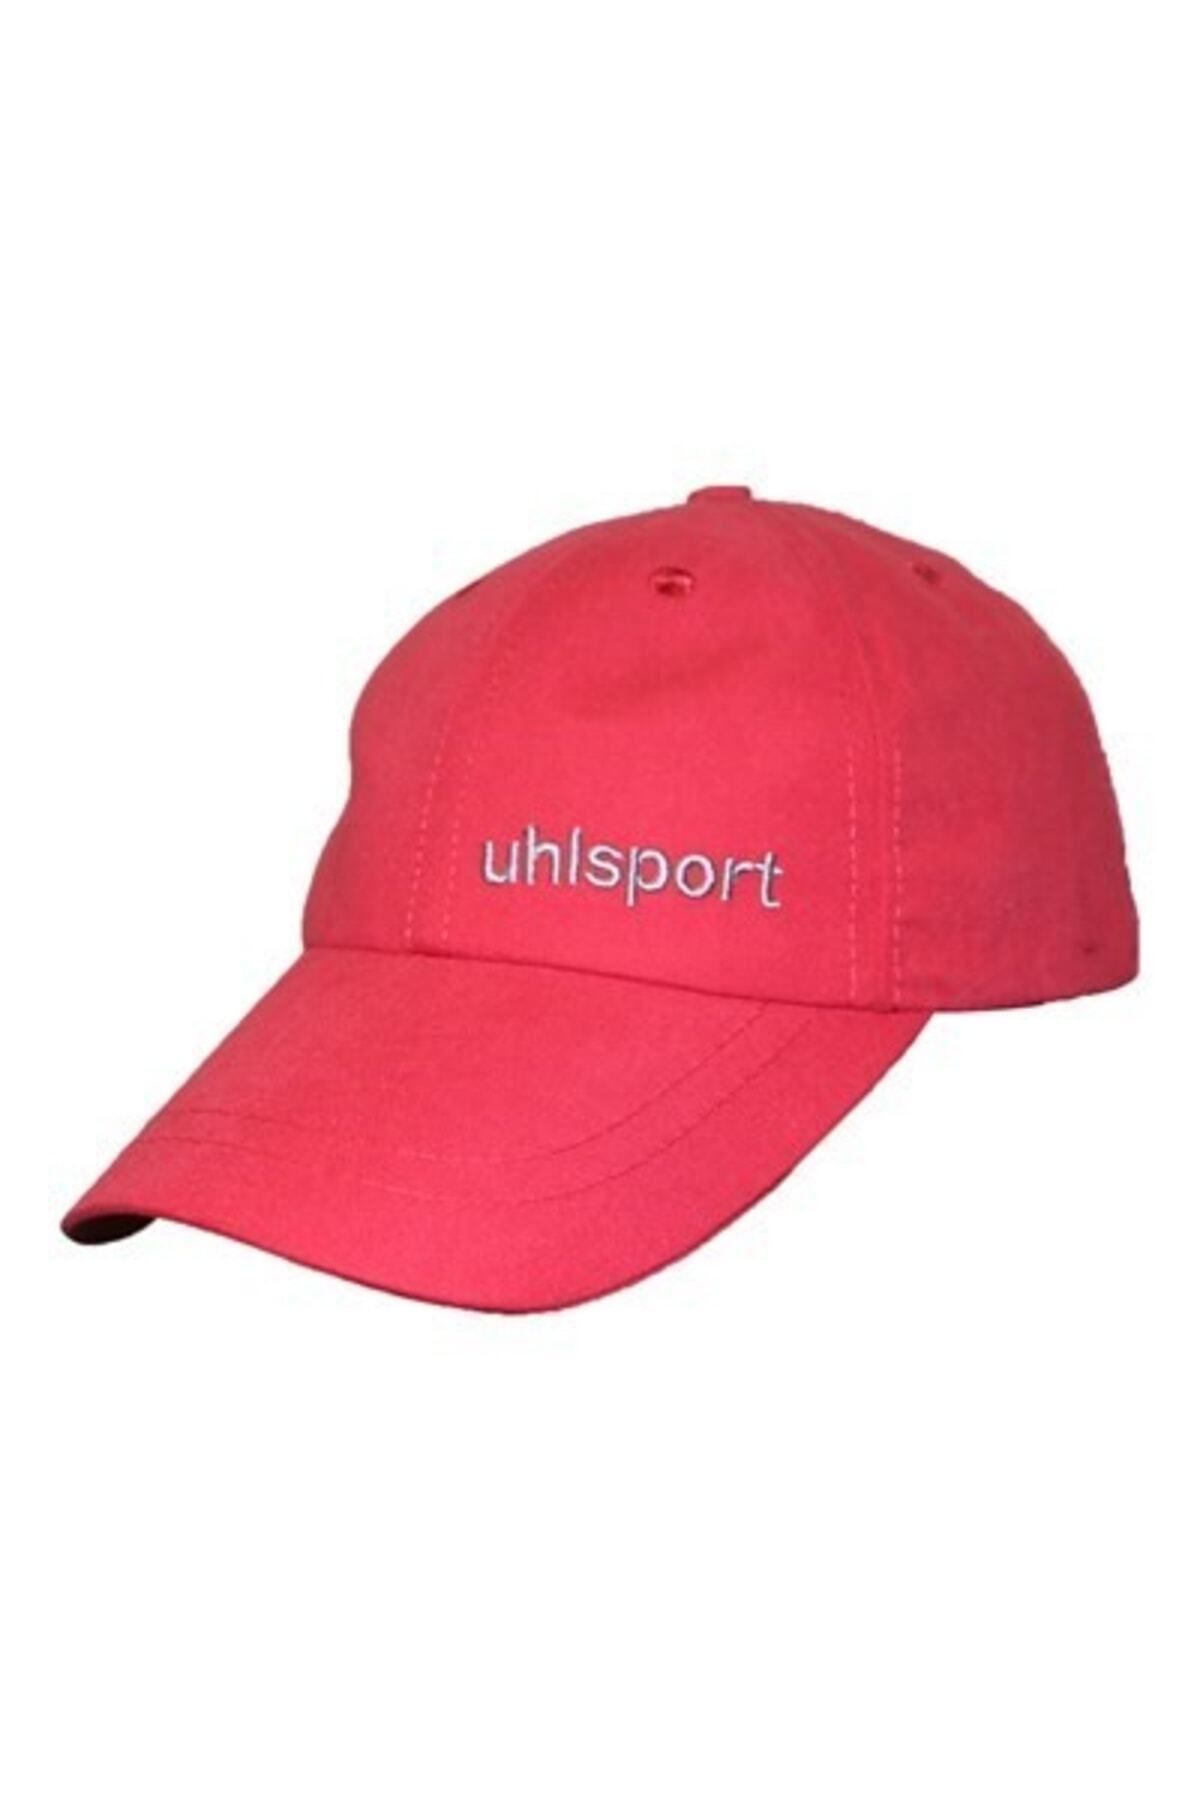 uhlsport Uhl Sport Şapka Şapka